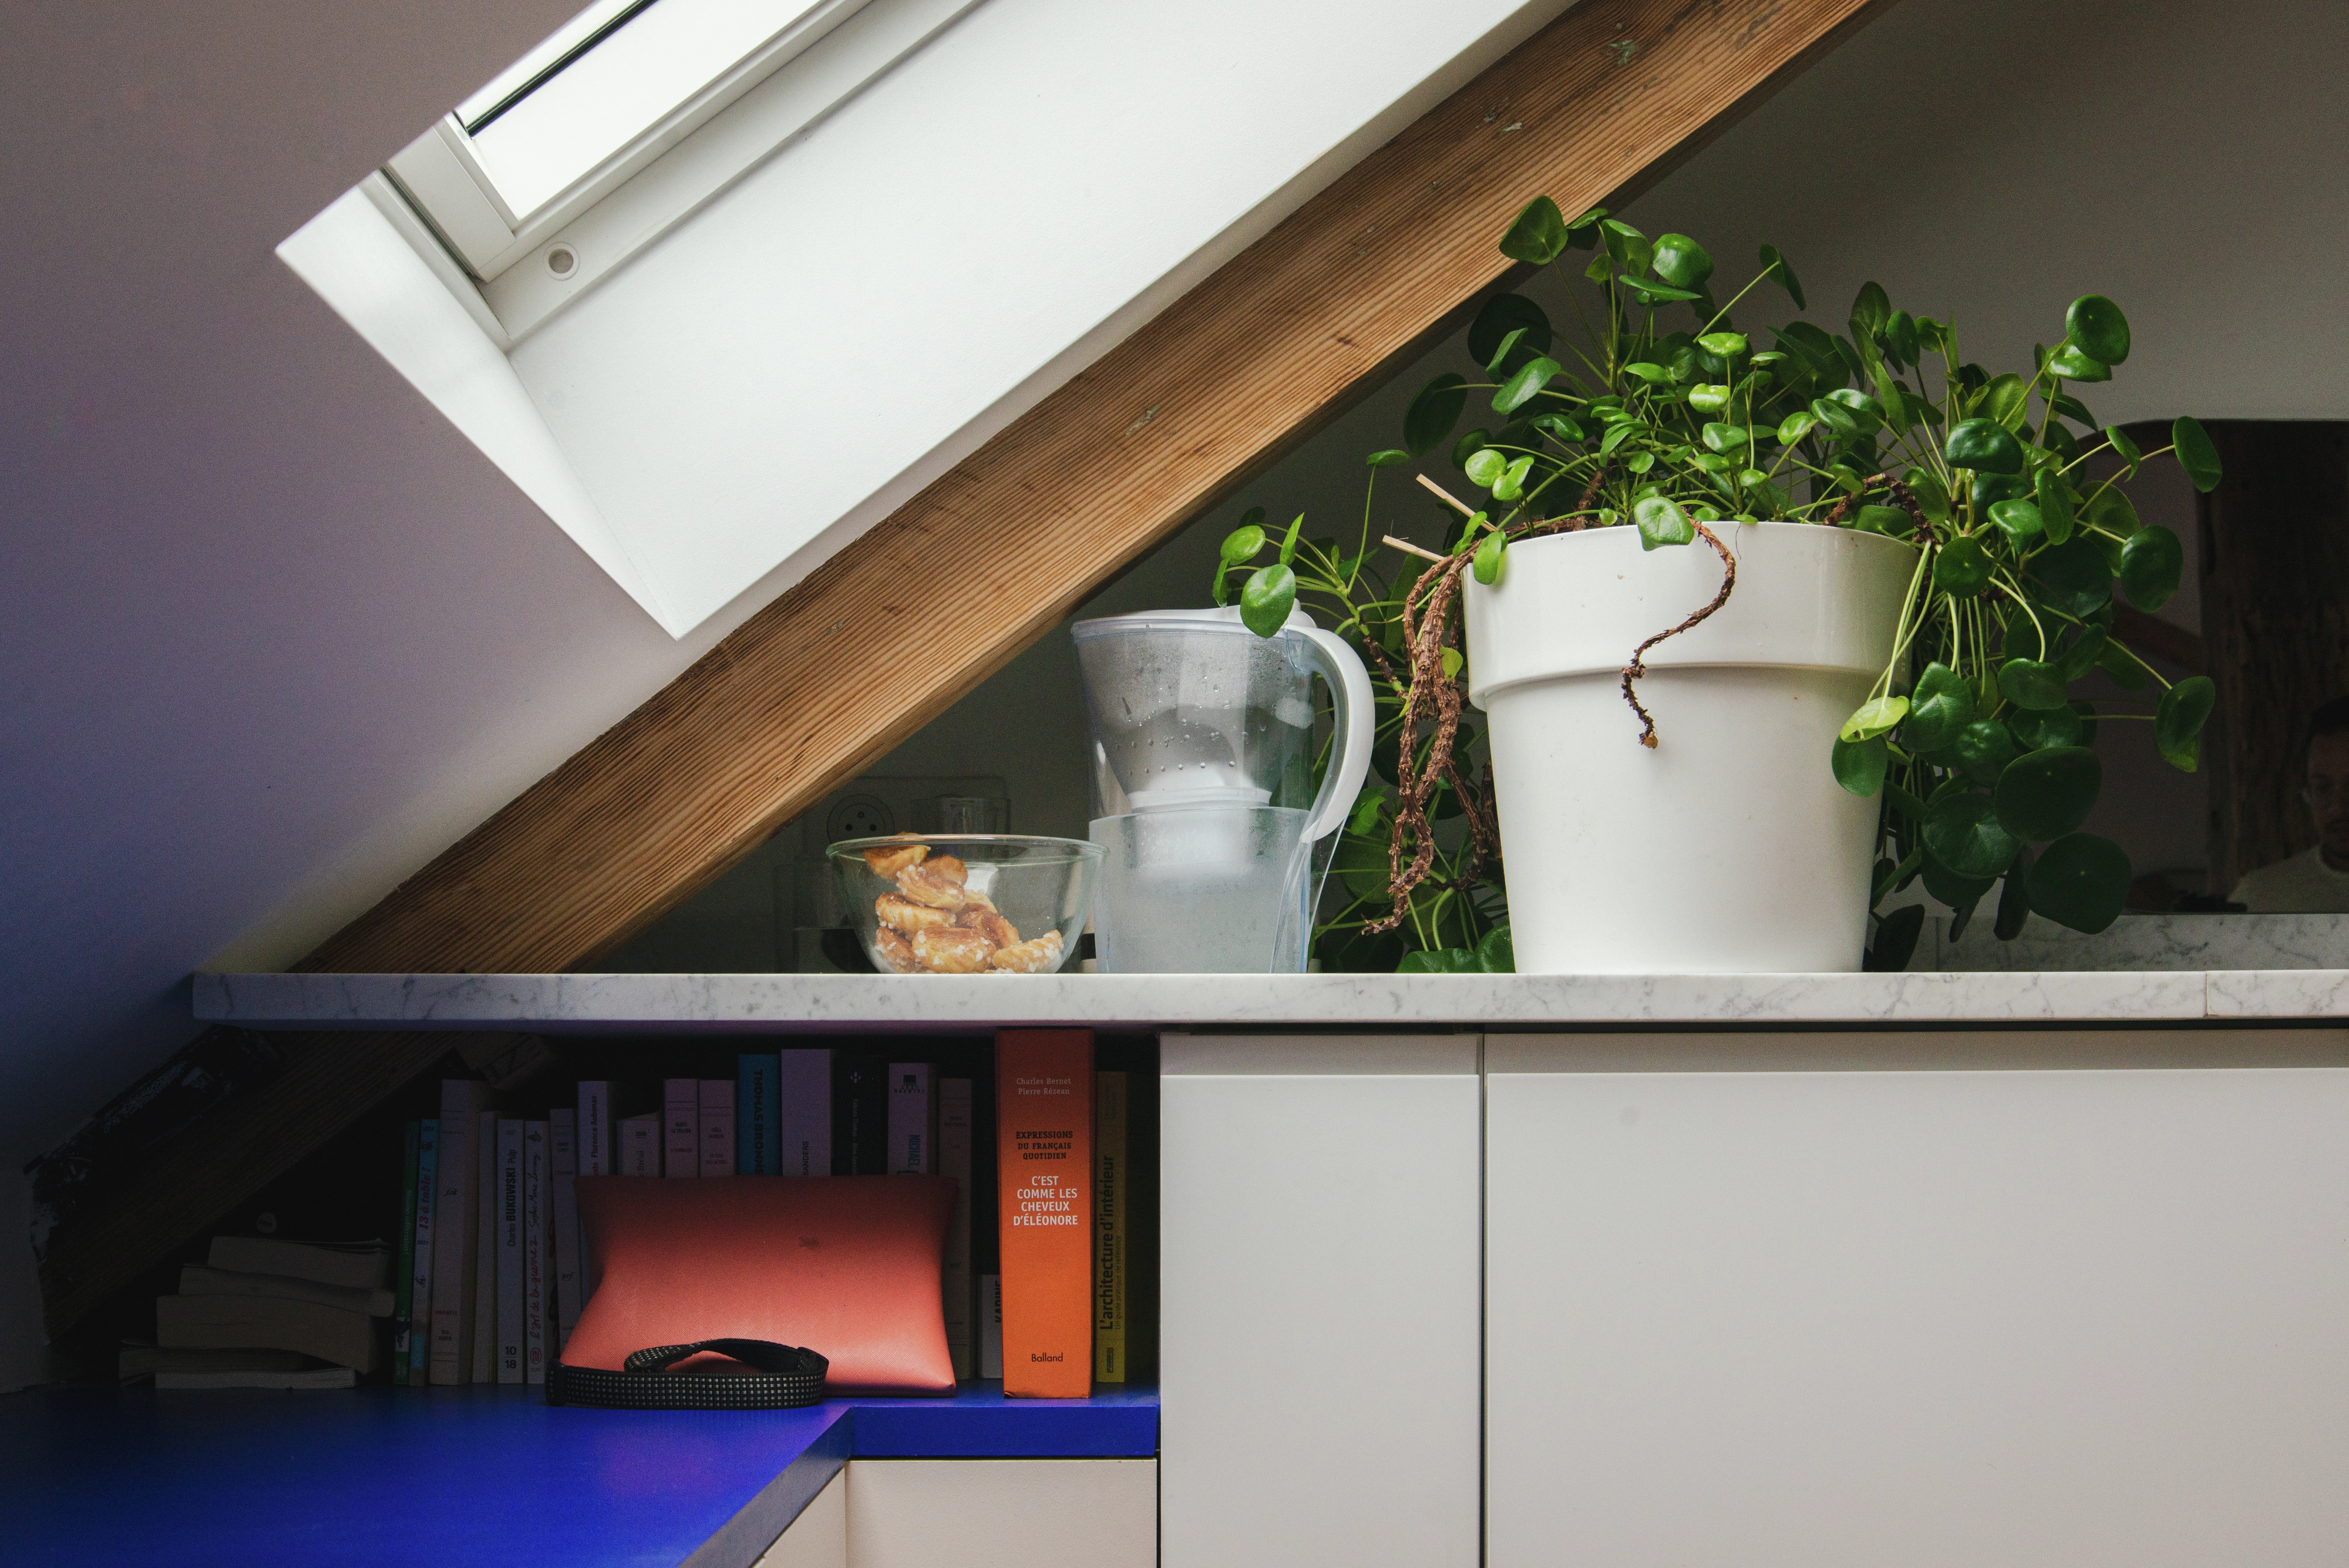 Bureau à domicile dans le comble avec fenêtre VELUX, livres et une plante en pot sur une étagère.